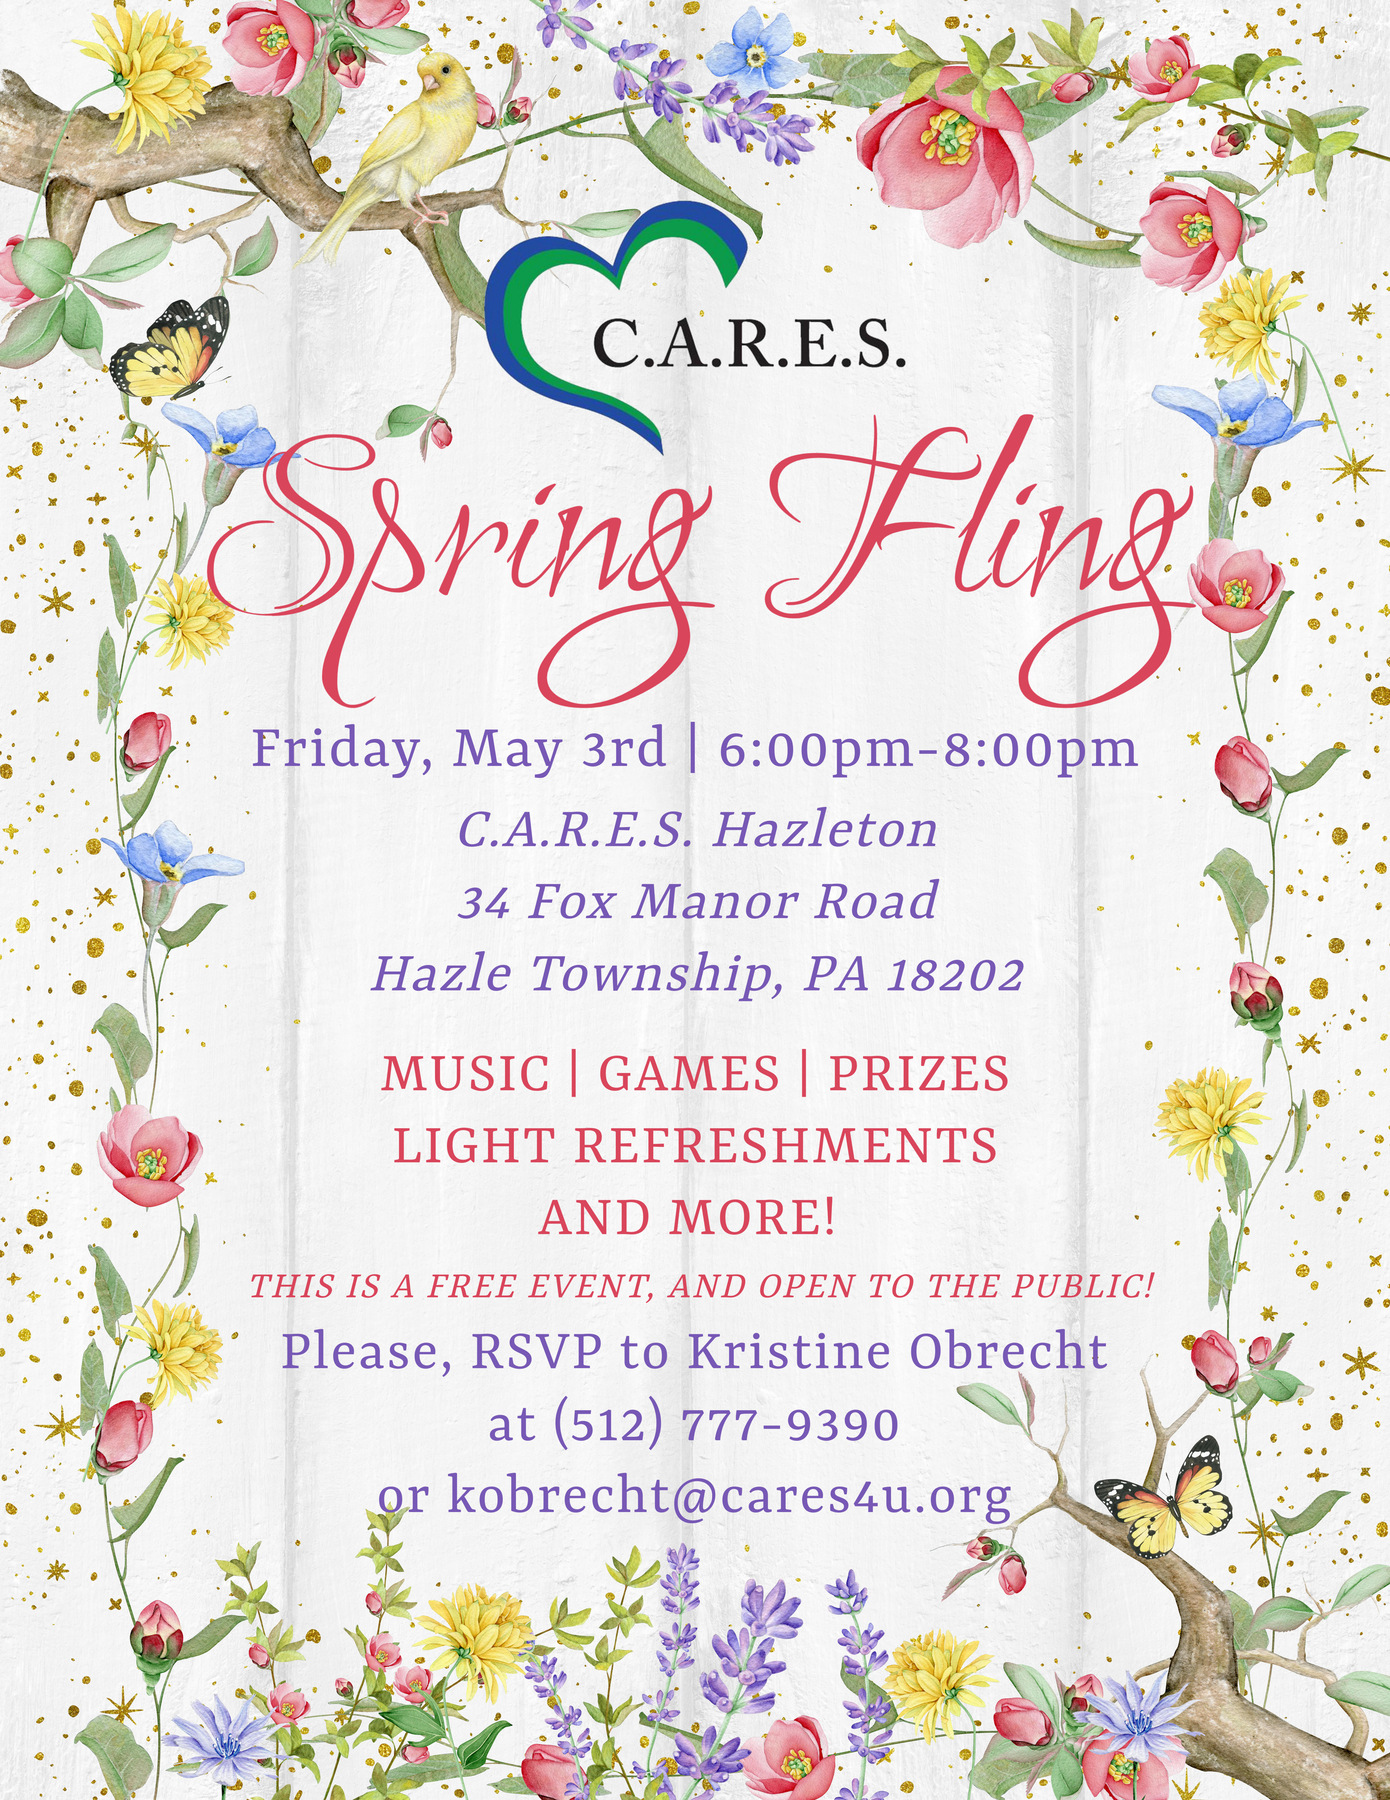 C.A.R.E.S. Spring Fling - Hazleton @ C.A.R.E.S. Hazleton